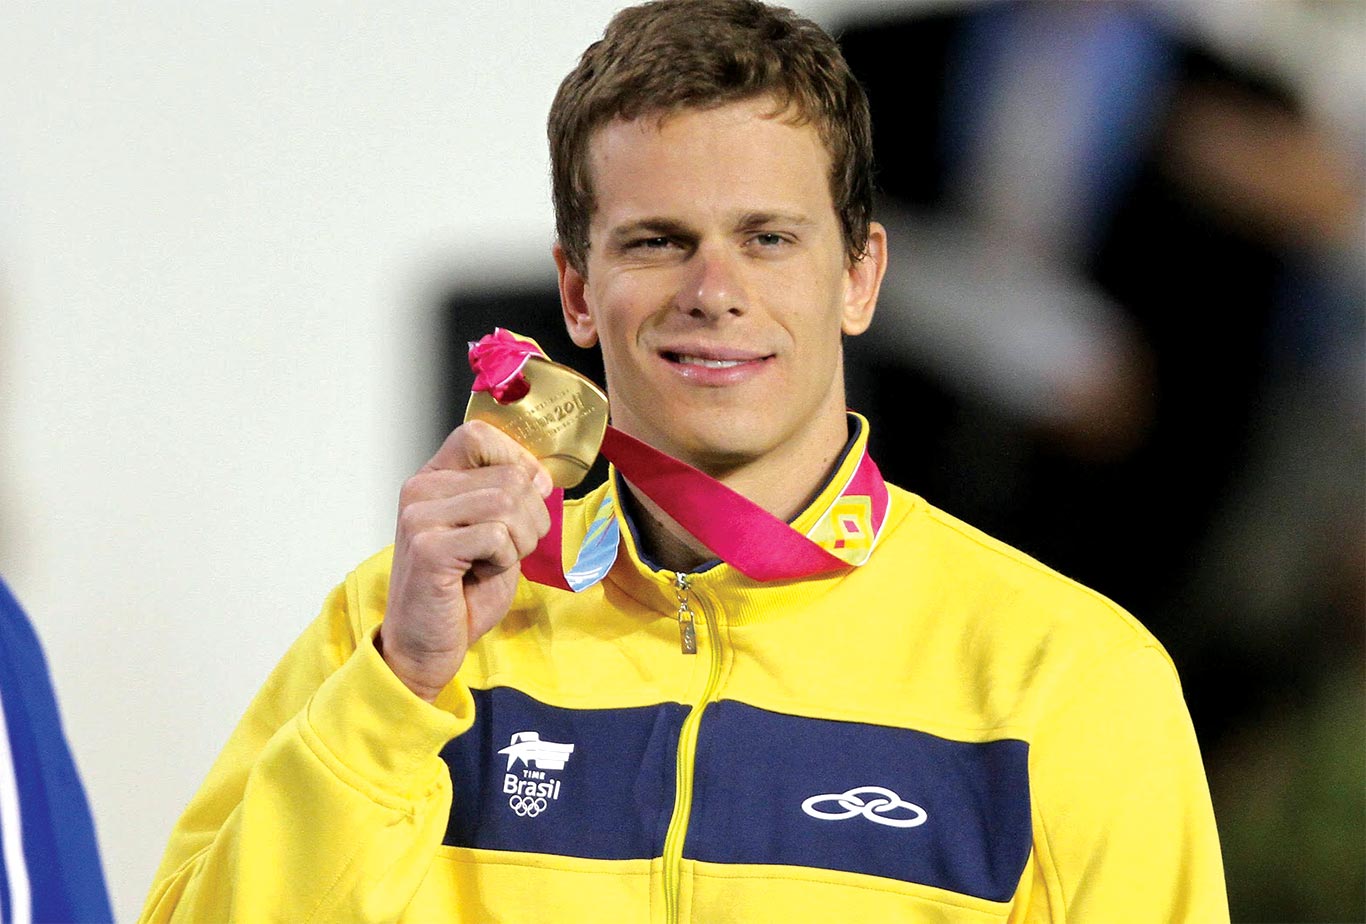 Cesar Cielo foi medalha de ouro nos jogos de Pequim